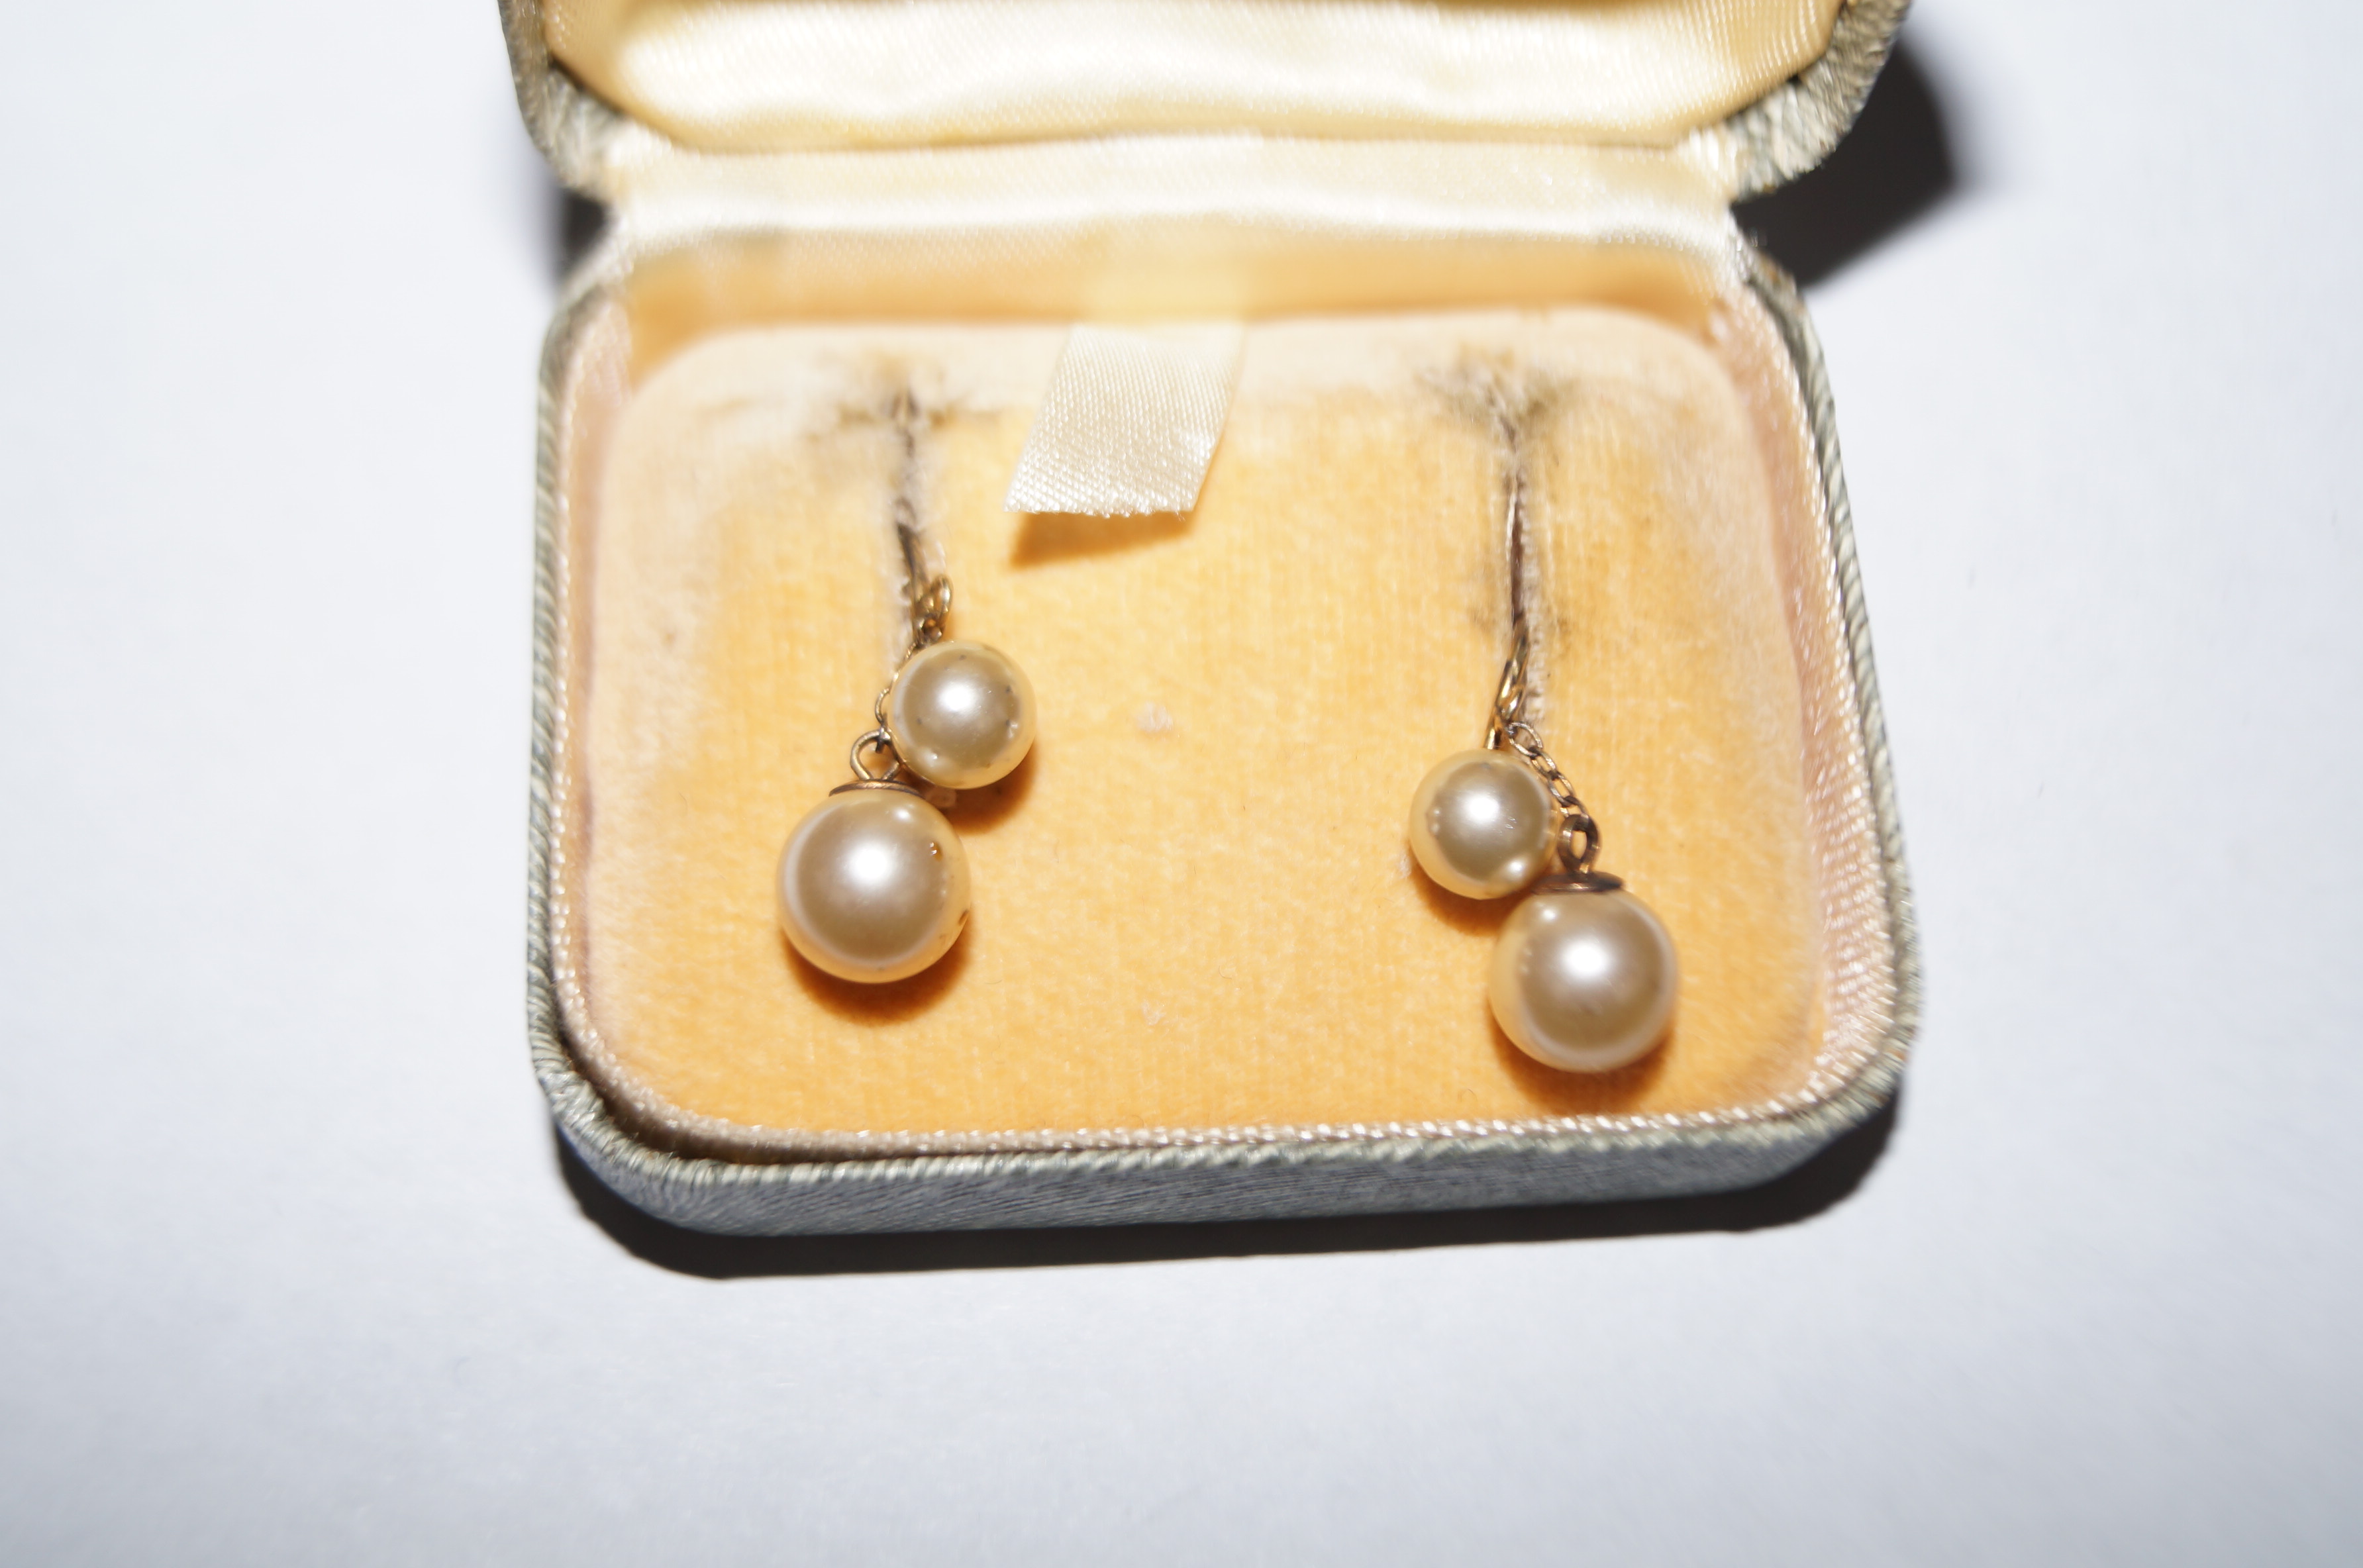 Pair of silver lotus earrings